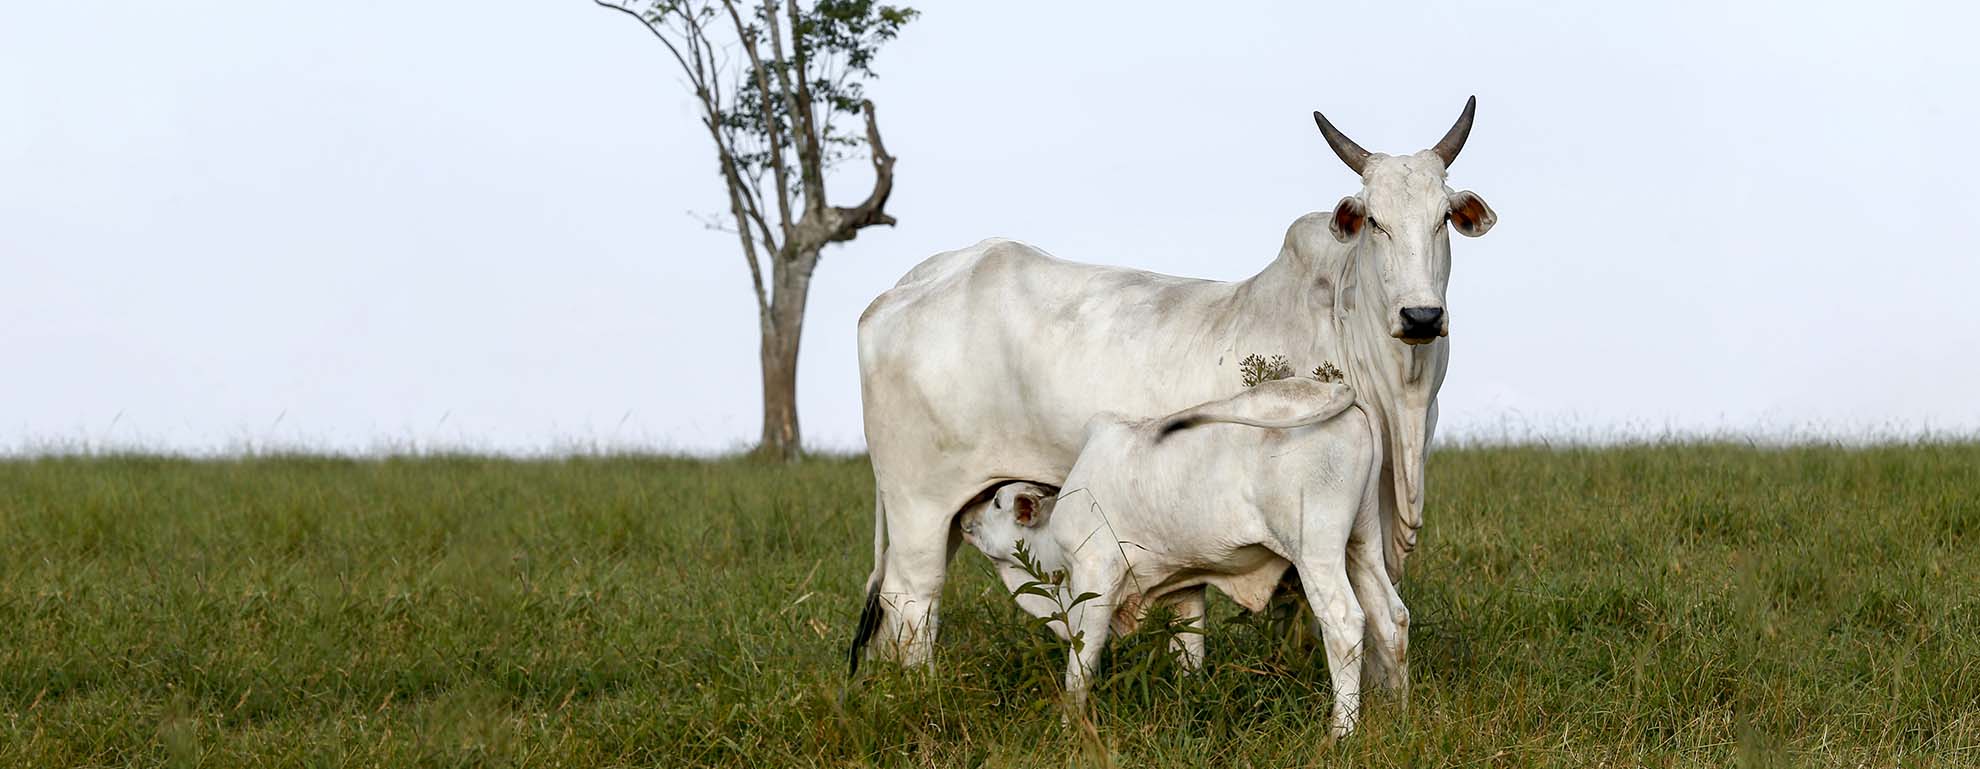 Na imagem, temos uma vaca de cor branca e um bezerro amamentando nela em um pasto. Foto ilustrar matéria de compra de bezerros.